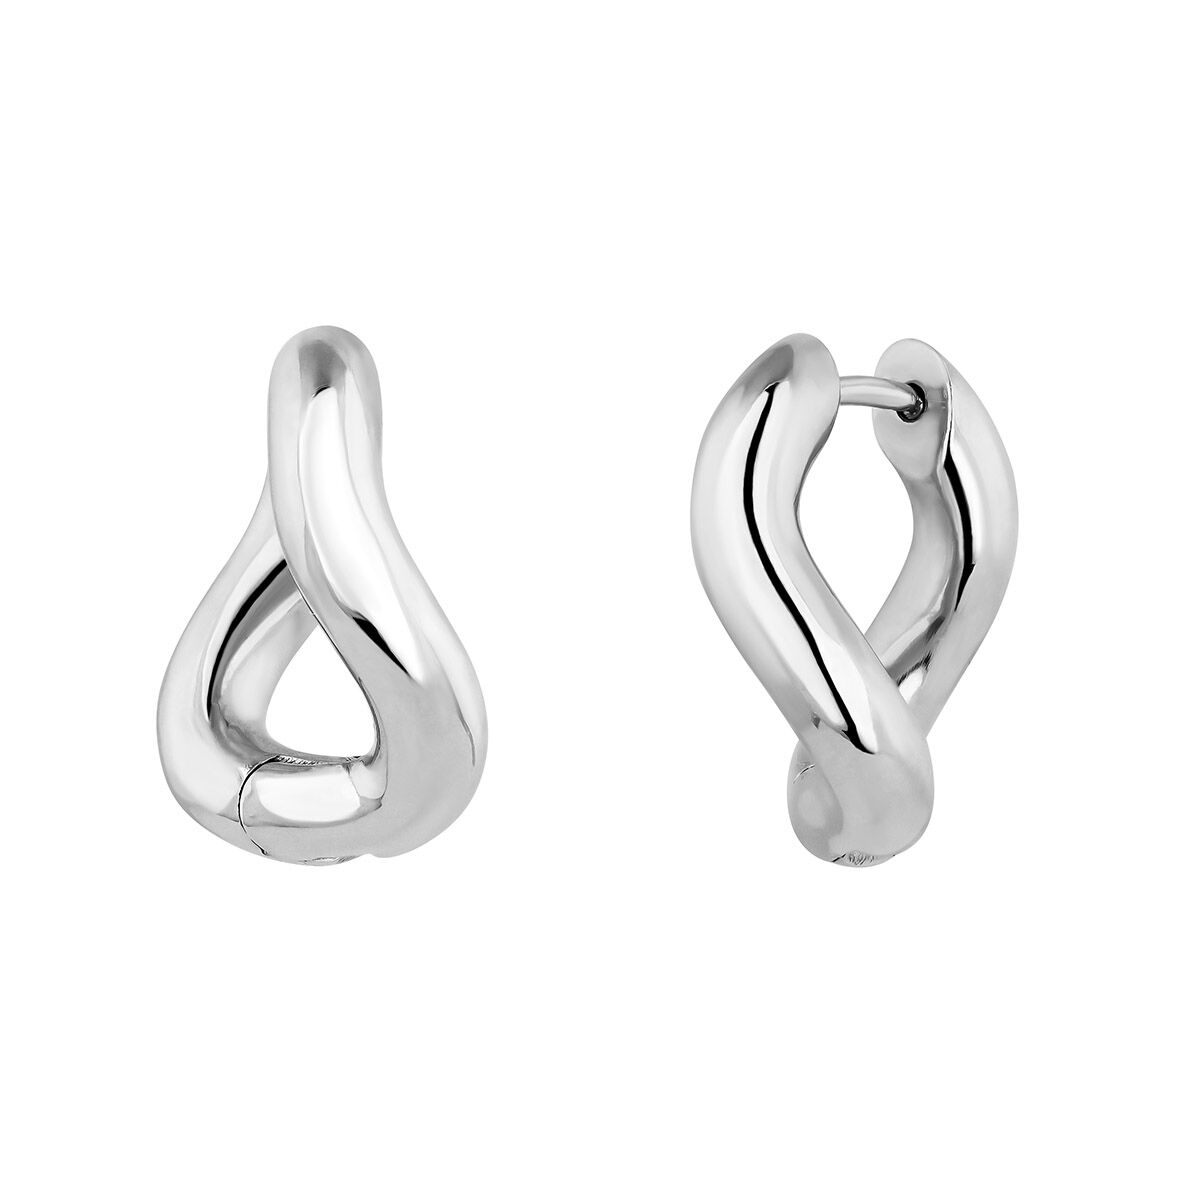 Medium thick wavy hoop earrings in silver, J05134-01, hi-res